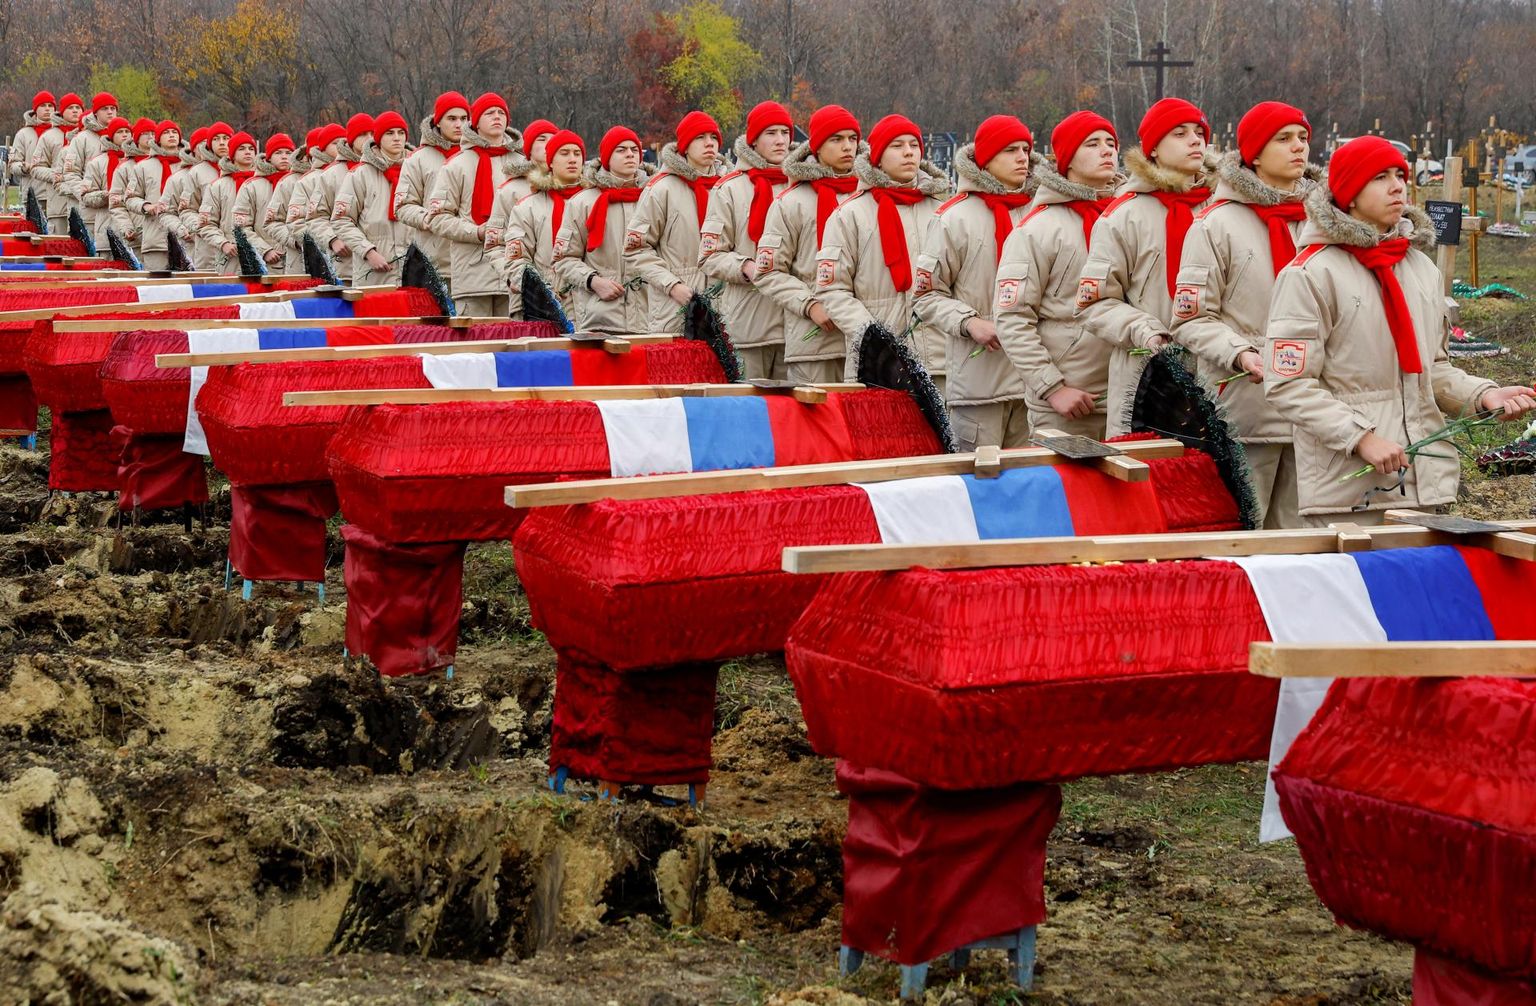 Tõenäoliselt on Ukrainas langenud Vene sõdurite hulk lehe ilmumise ajaks ületanud 90 000 piiri. Neljapäeva hommiku seisuga oli Ukraina relvajõudude andmetel sõjas oma elu jätnud 89 440 Vene sõdurit. Pildil 38 sõduri matused 11. novembril Venemaa okupeeritud Luhanski oblastis Ukrainas.